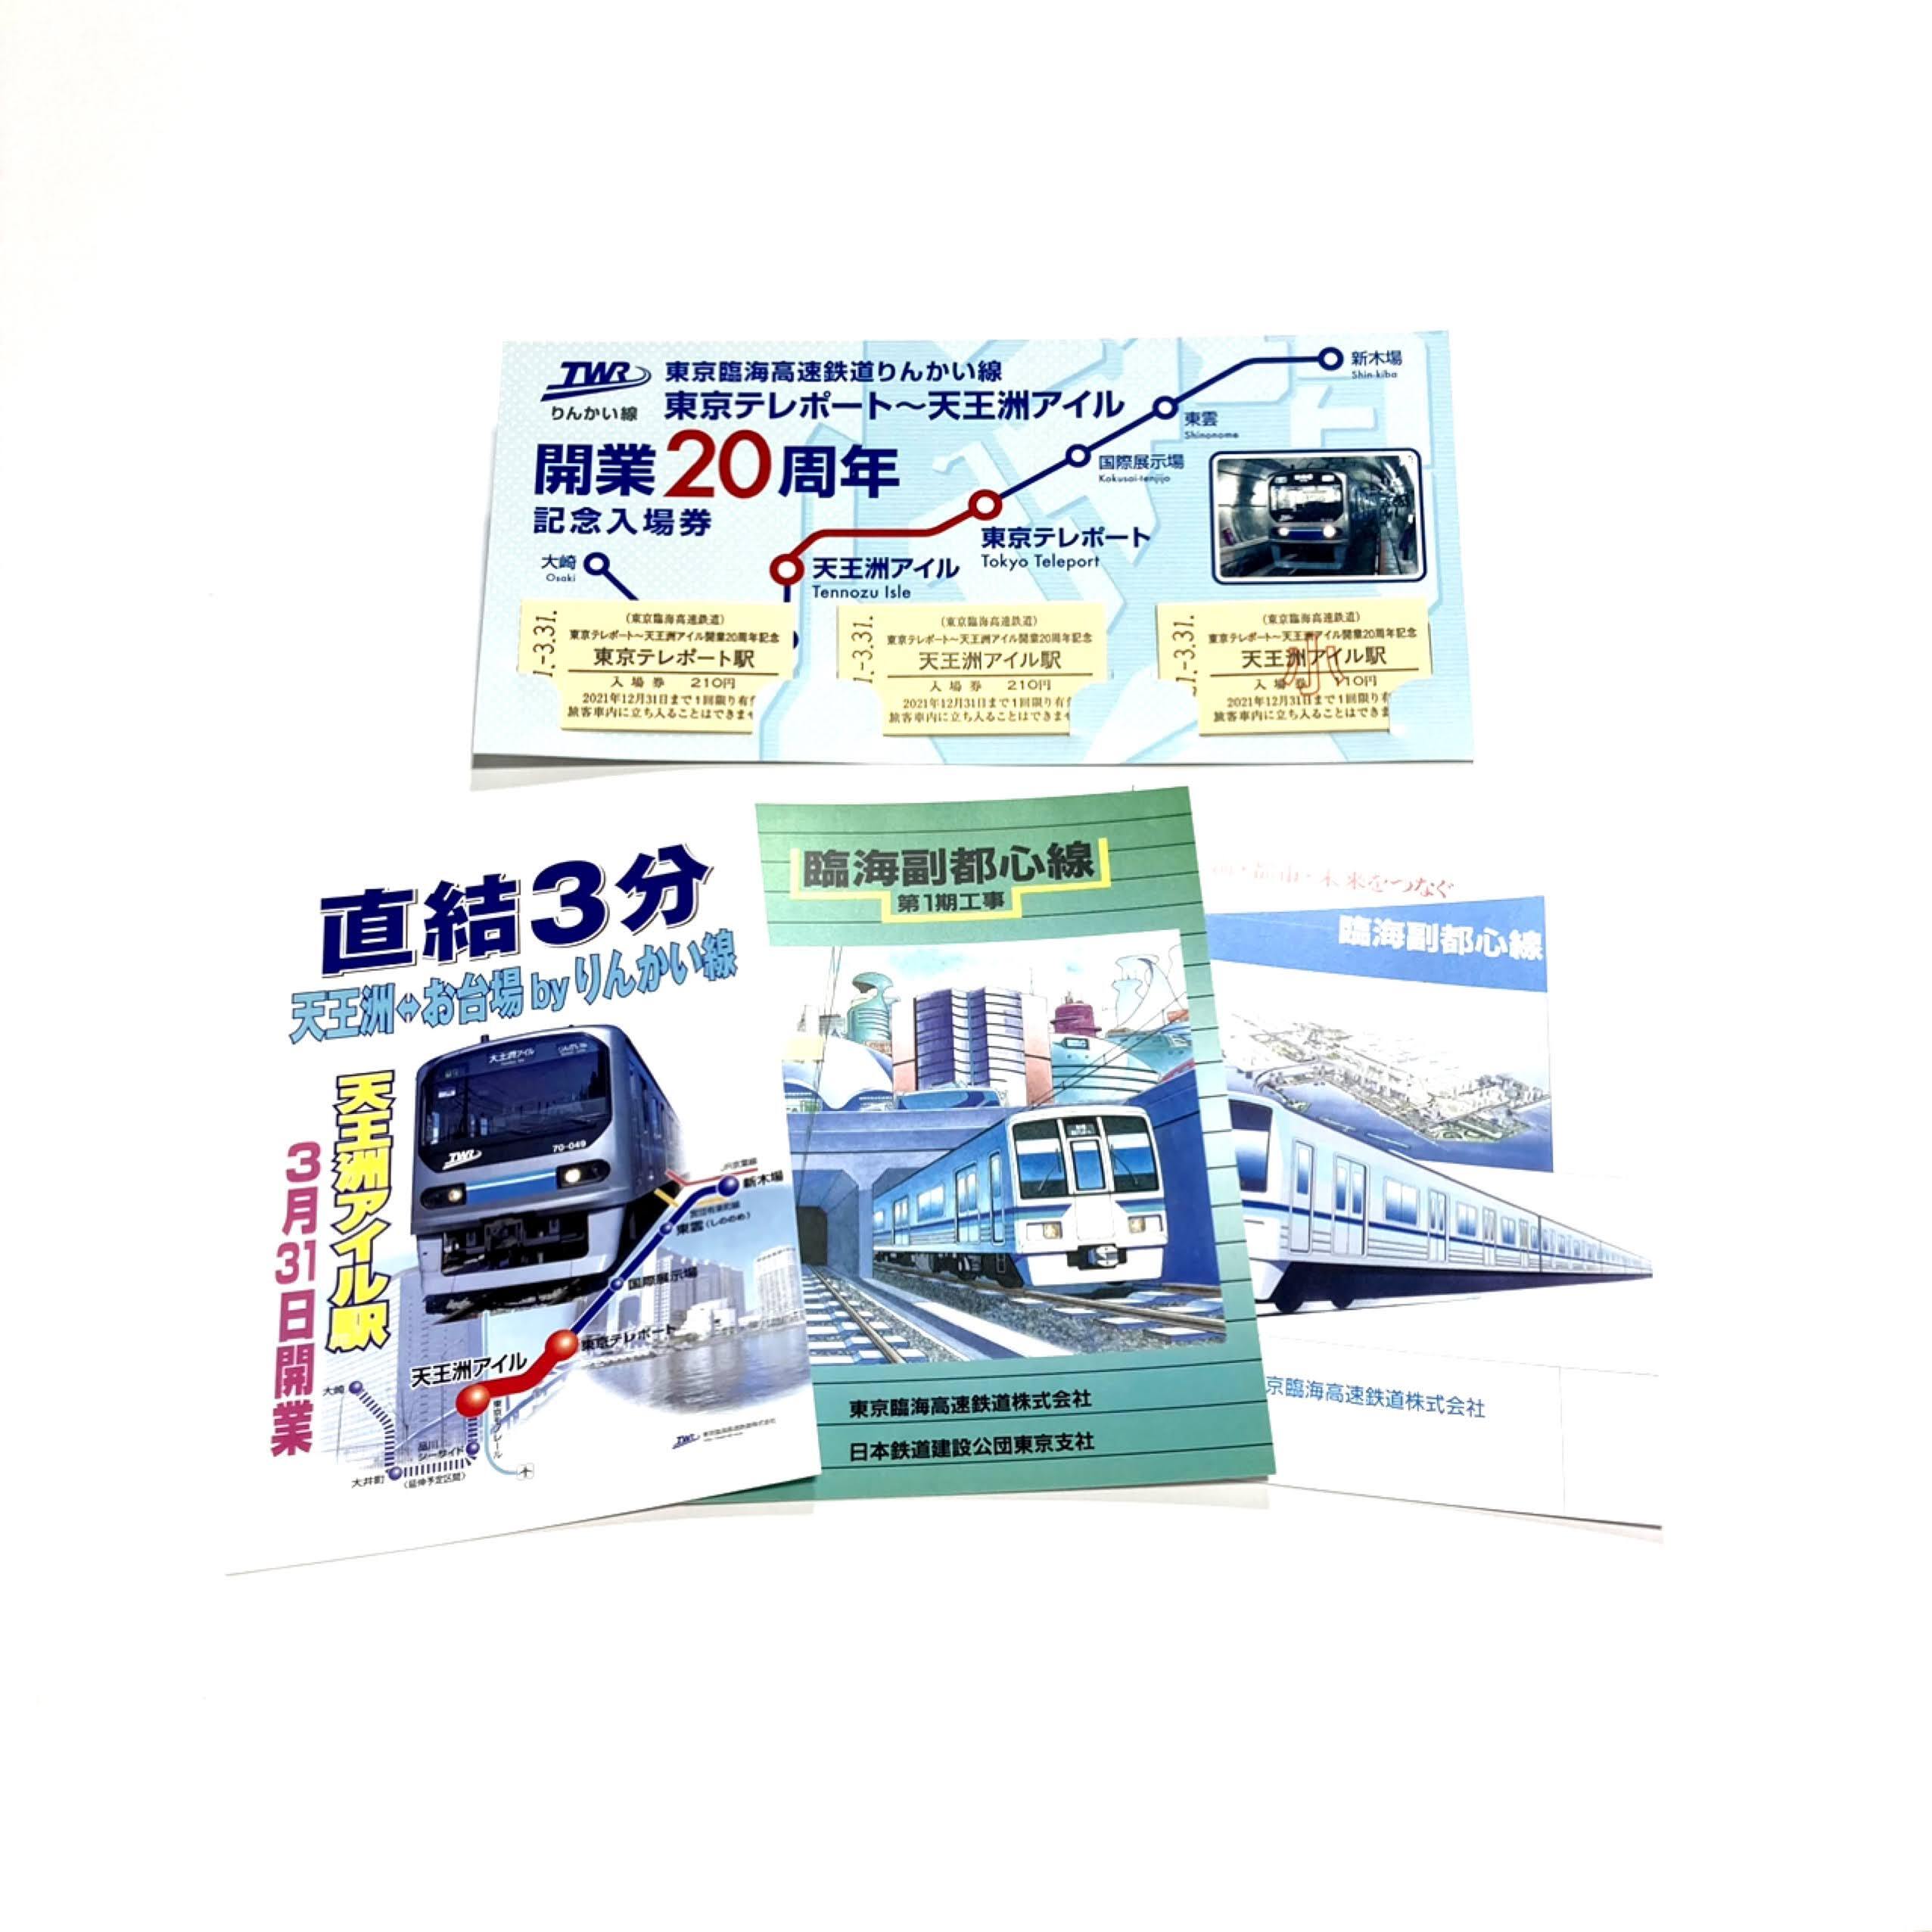 東京テレポート 天王洲アイル開業周年 記念入場券 オリジナルポストカードセット りんかい線オフィシャルストア